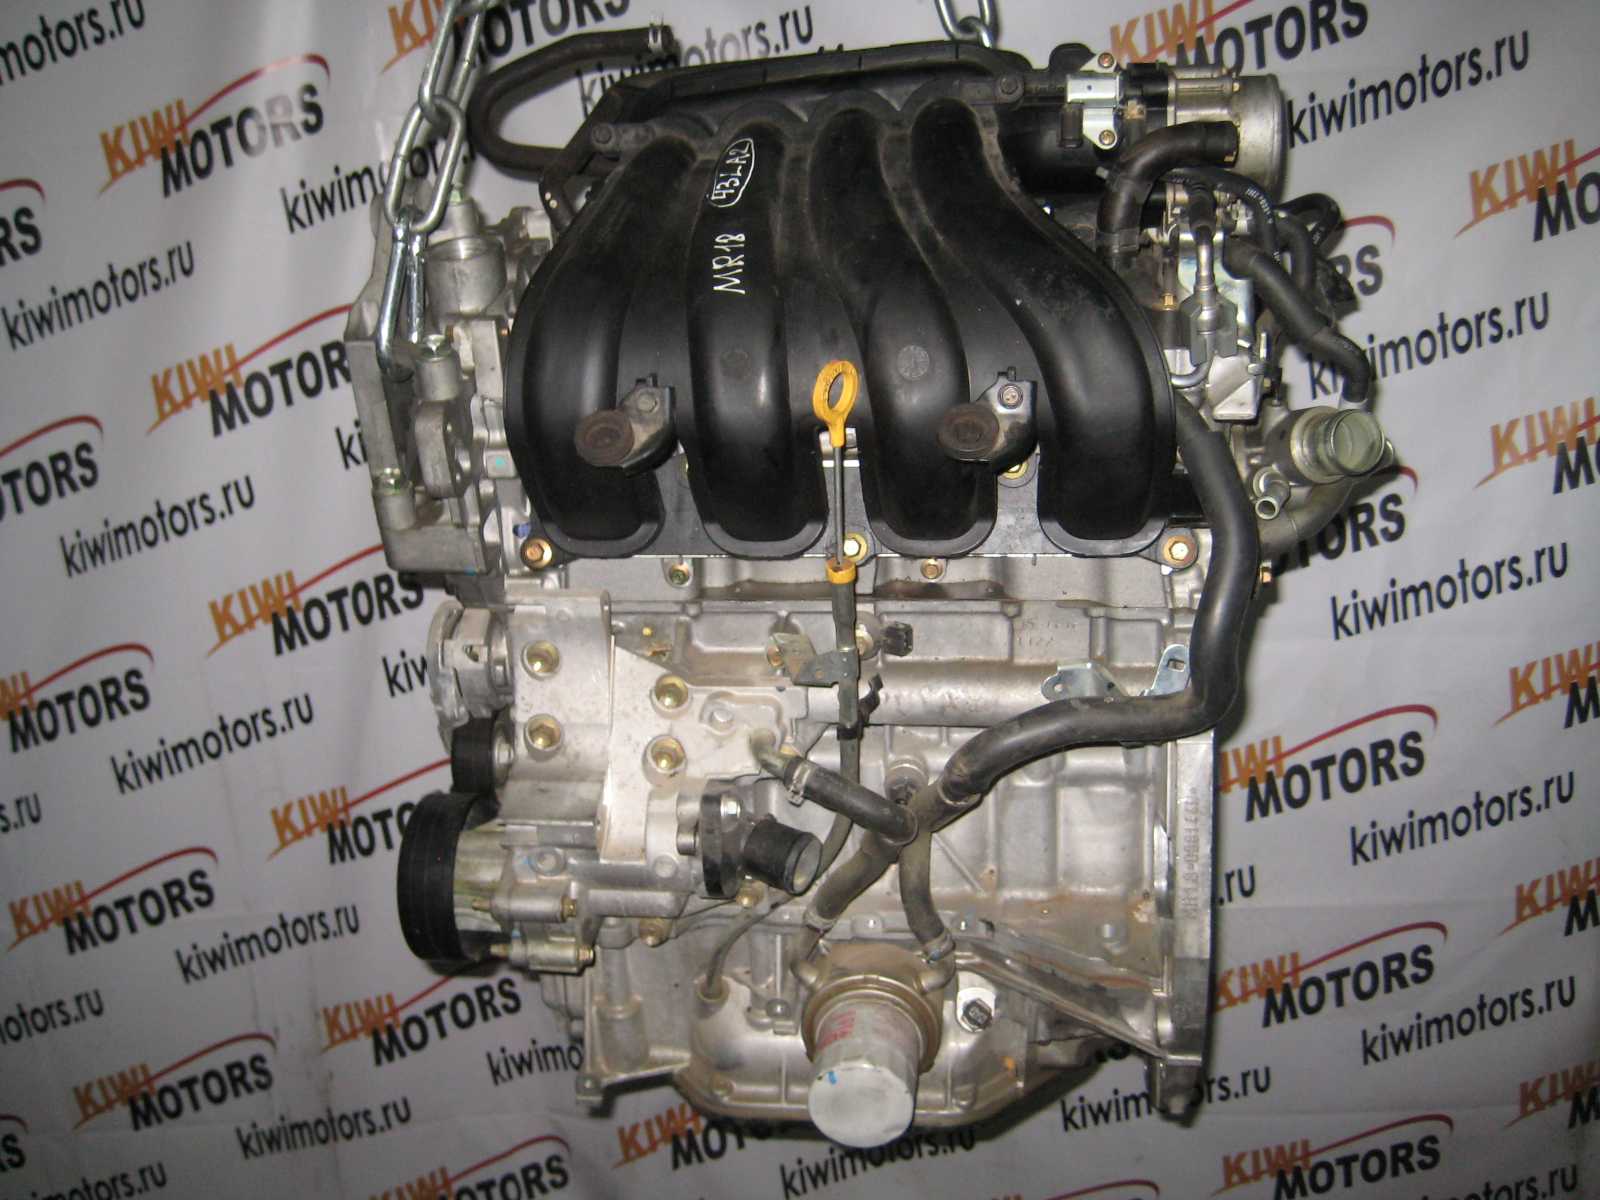 Двигатель mr20de ниссан: технические характеристики, надежность - мотор инфо